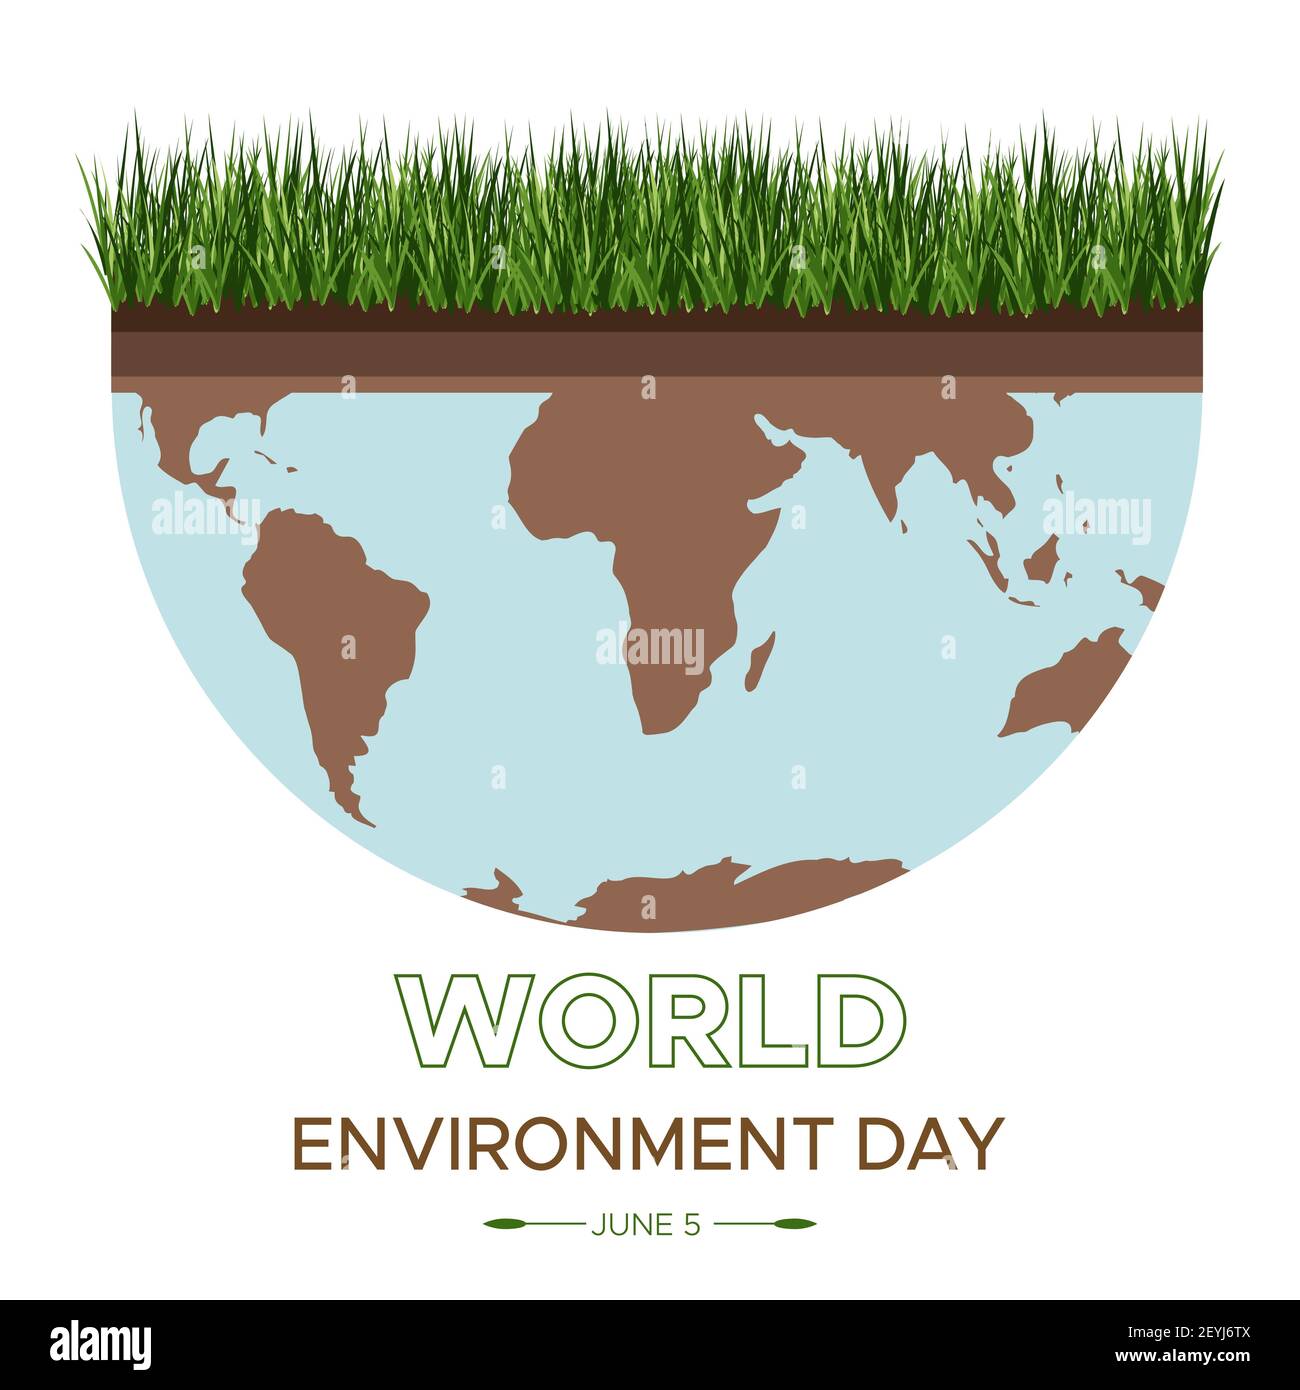 Journée mondiale de l'environnement - illustration vectorielle d'un concept environnemental pour sauver le monde. Isométrique sur le soin de la terre. Convient pour accueillir Illustration de Vecteur